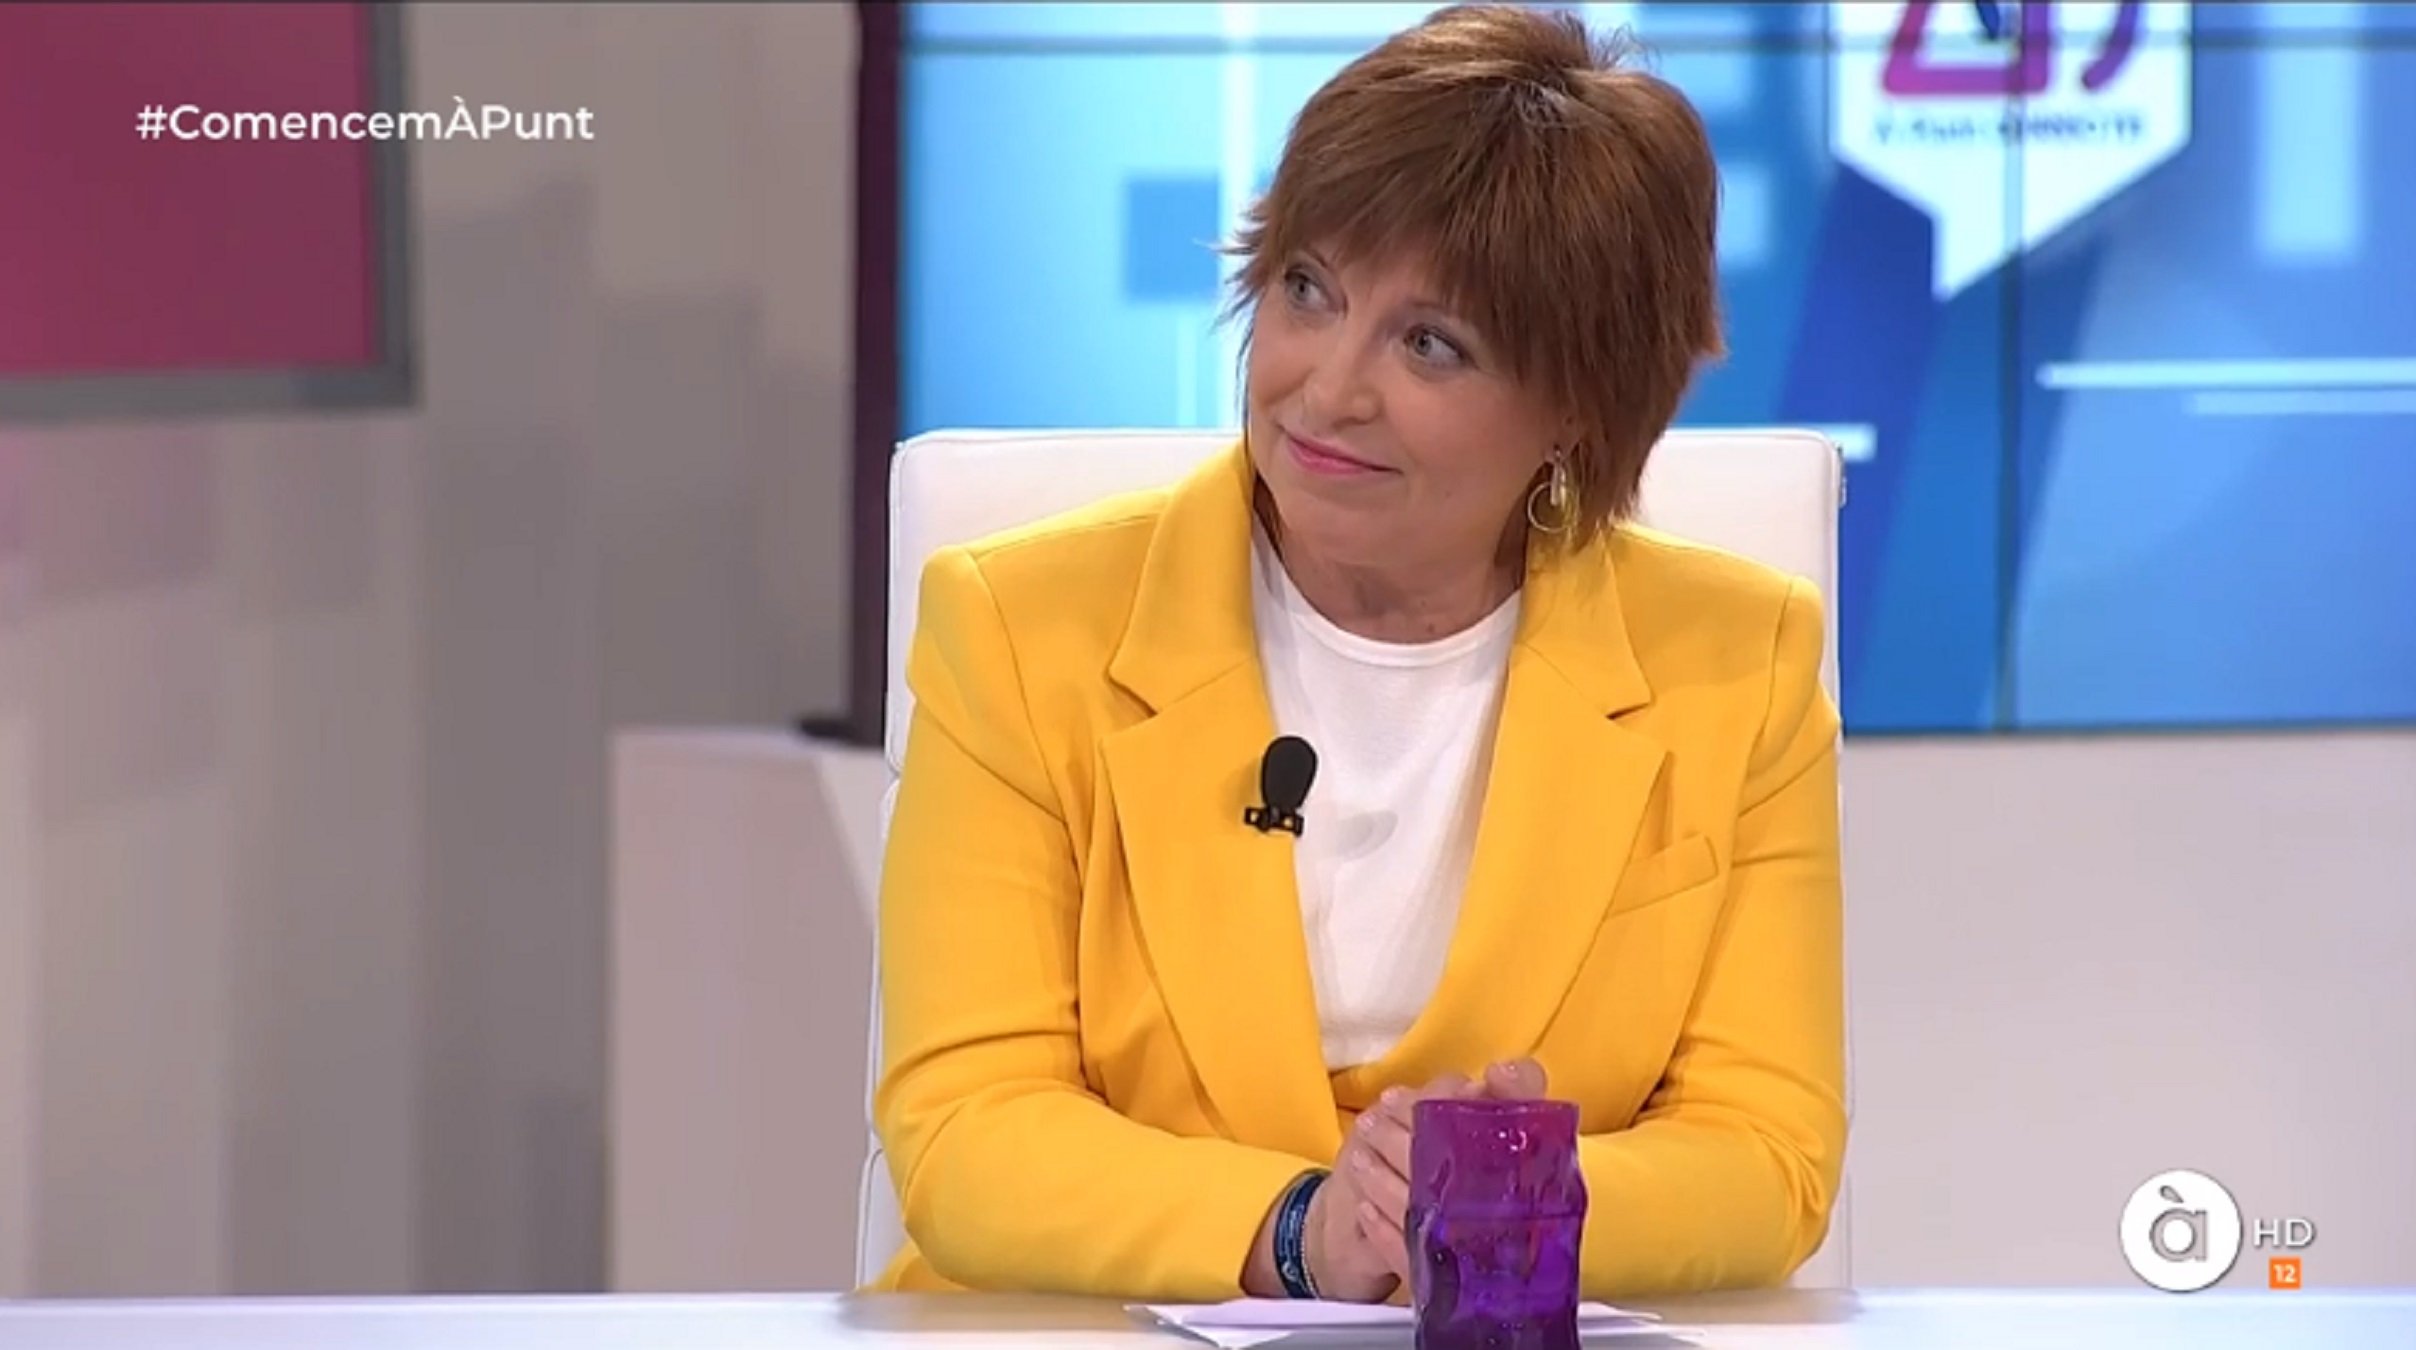 Piden la dimisión de la directora de la TV valenciana por vestir de amarillo